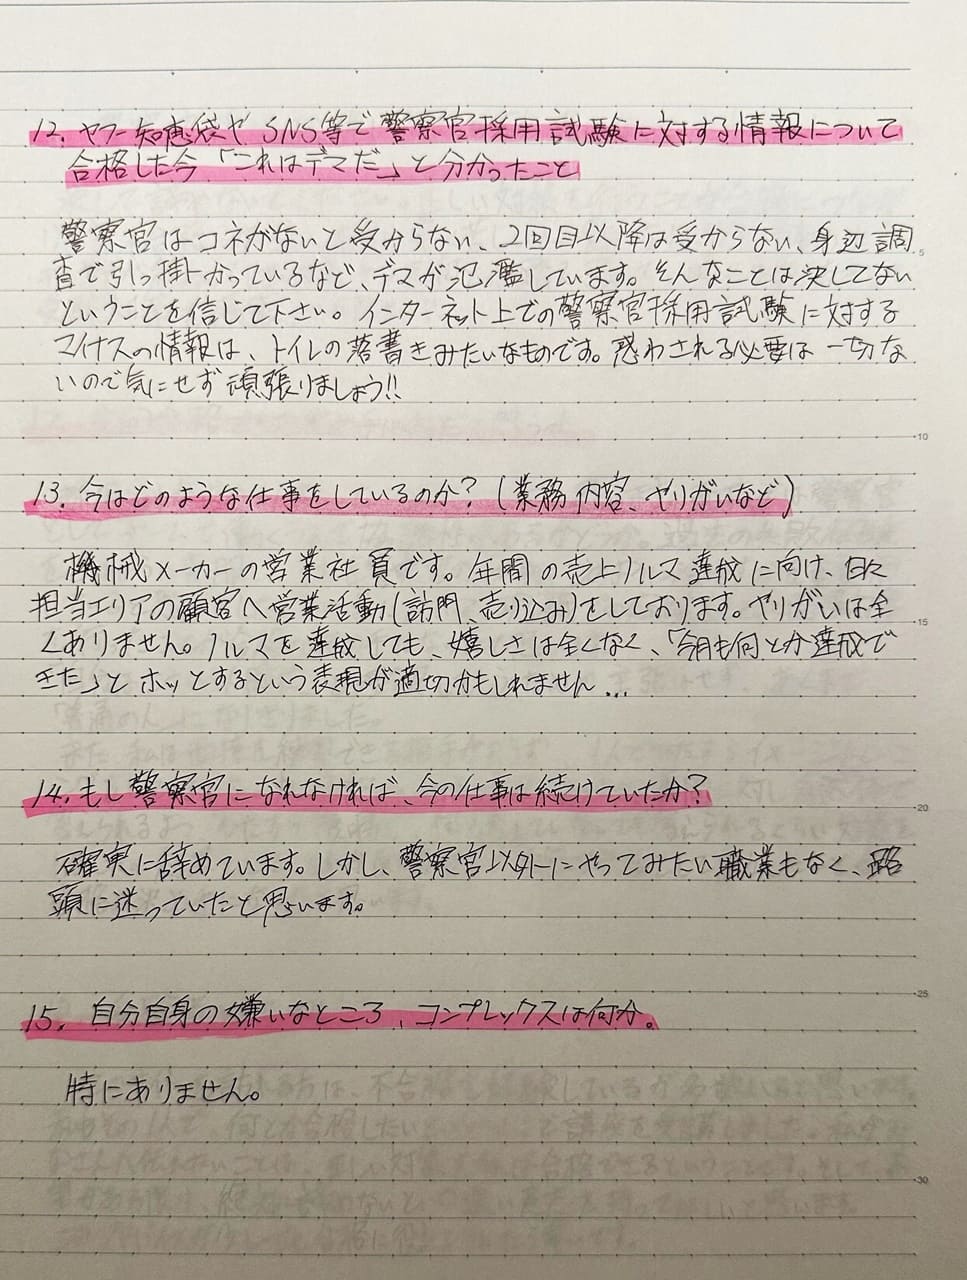 大阪府警と北海道警にダブル合格した男性受験生の直筆の手紙。ネットのデマなどを具体的に記載しています